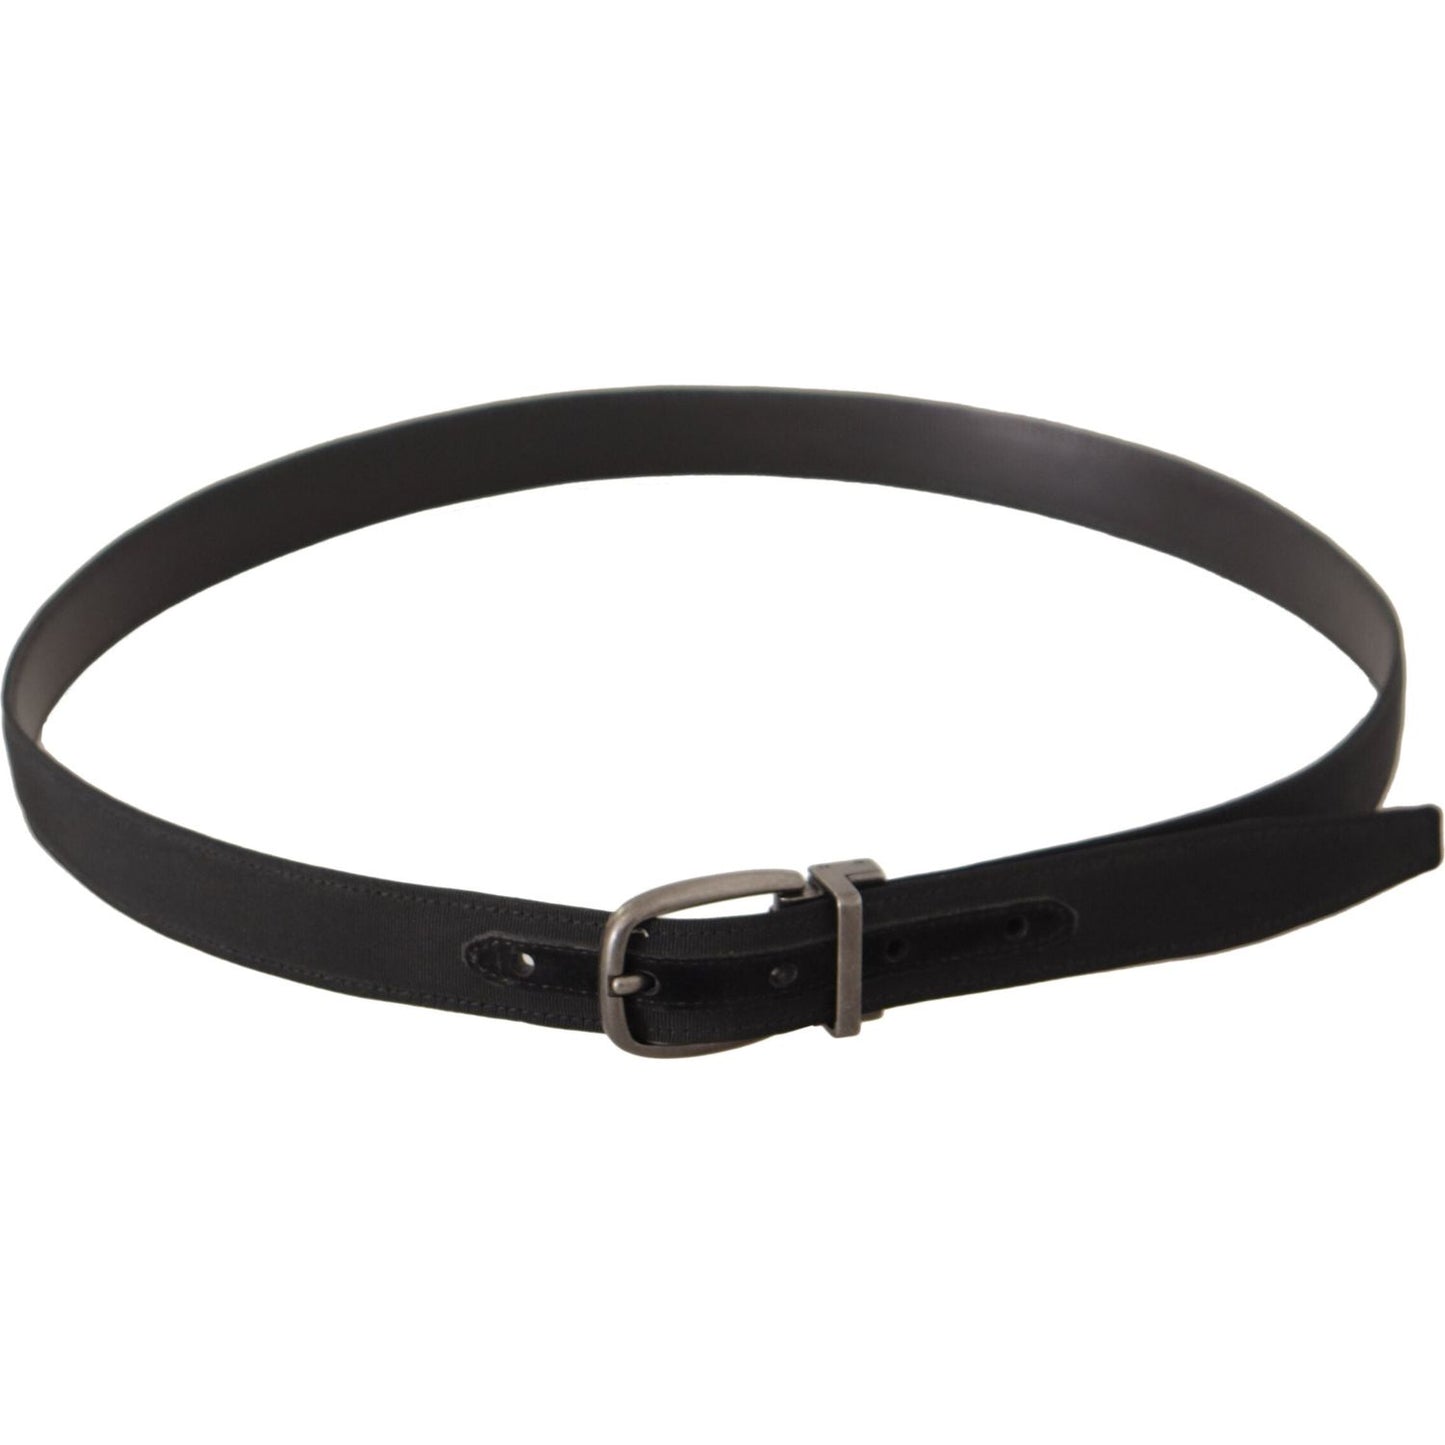 Dolce & Gabbana Elegant Black Leather Gents Belt black-suede-leather-silver-metal-buckle-belt IMG_0420-scaled-53e3d802-316.jpg